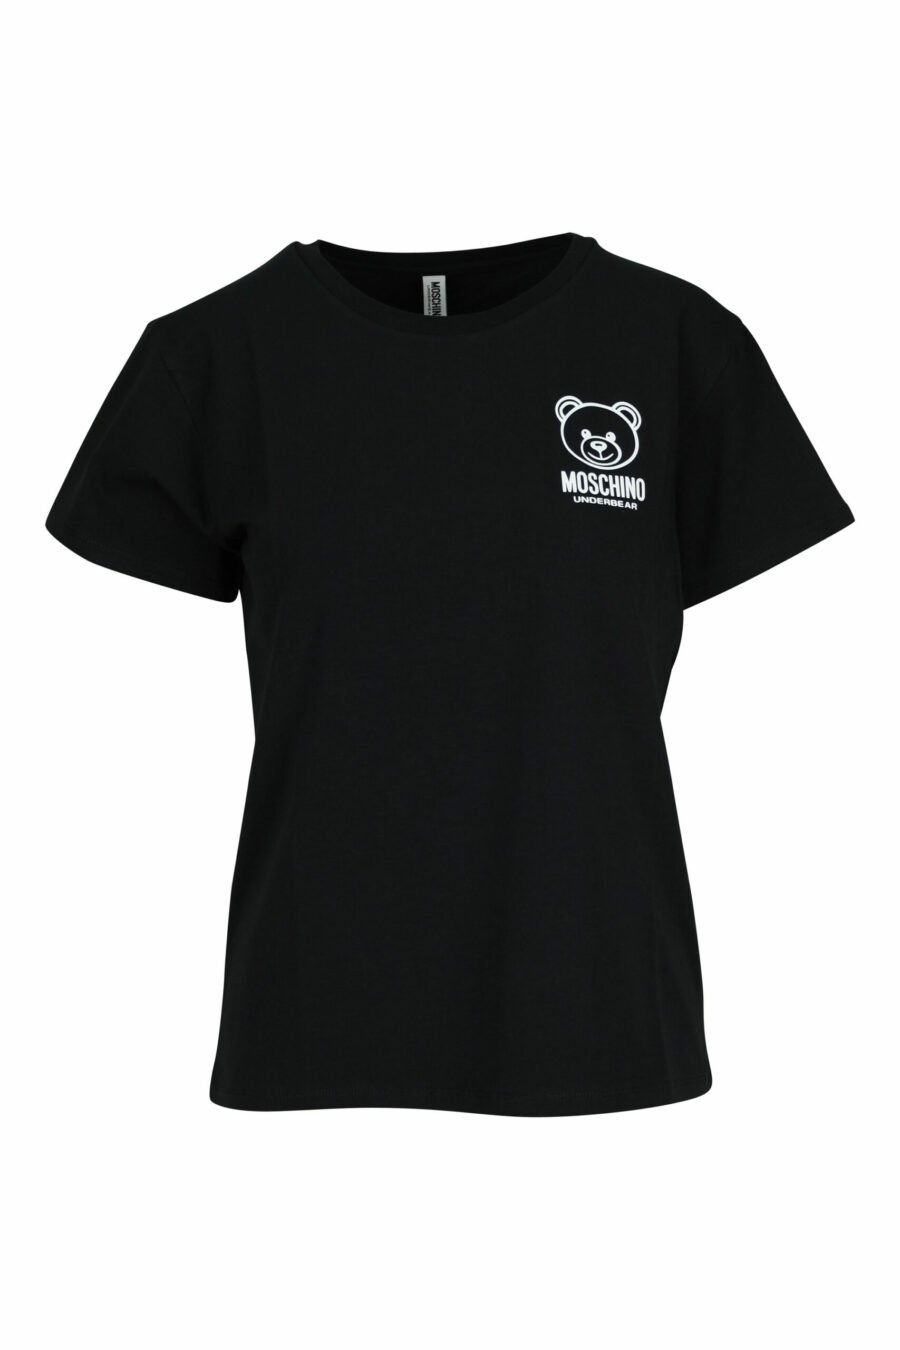 T-shirt preta com minilogo de urso branco - 667113355306 scaled